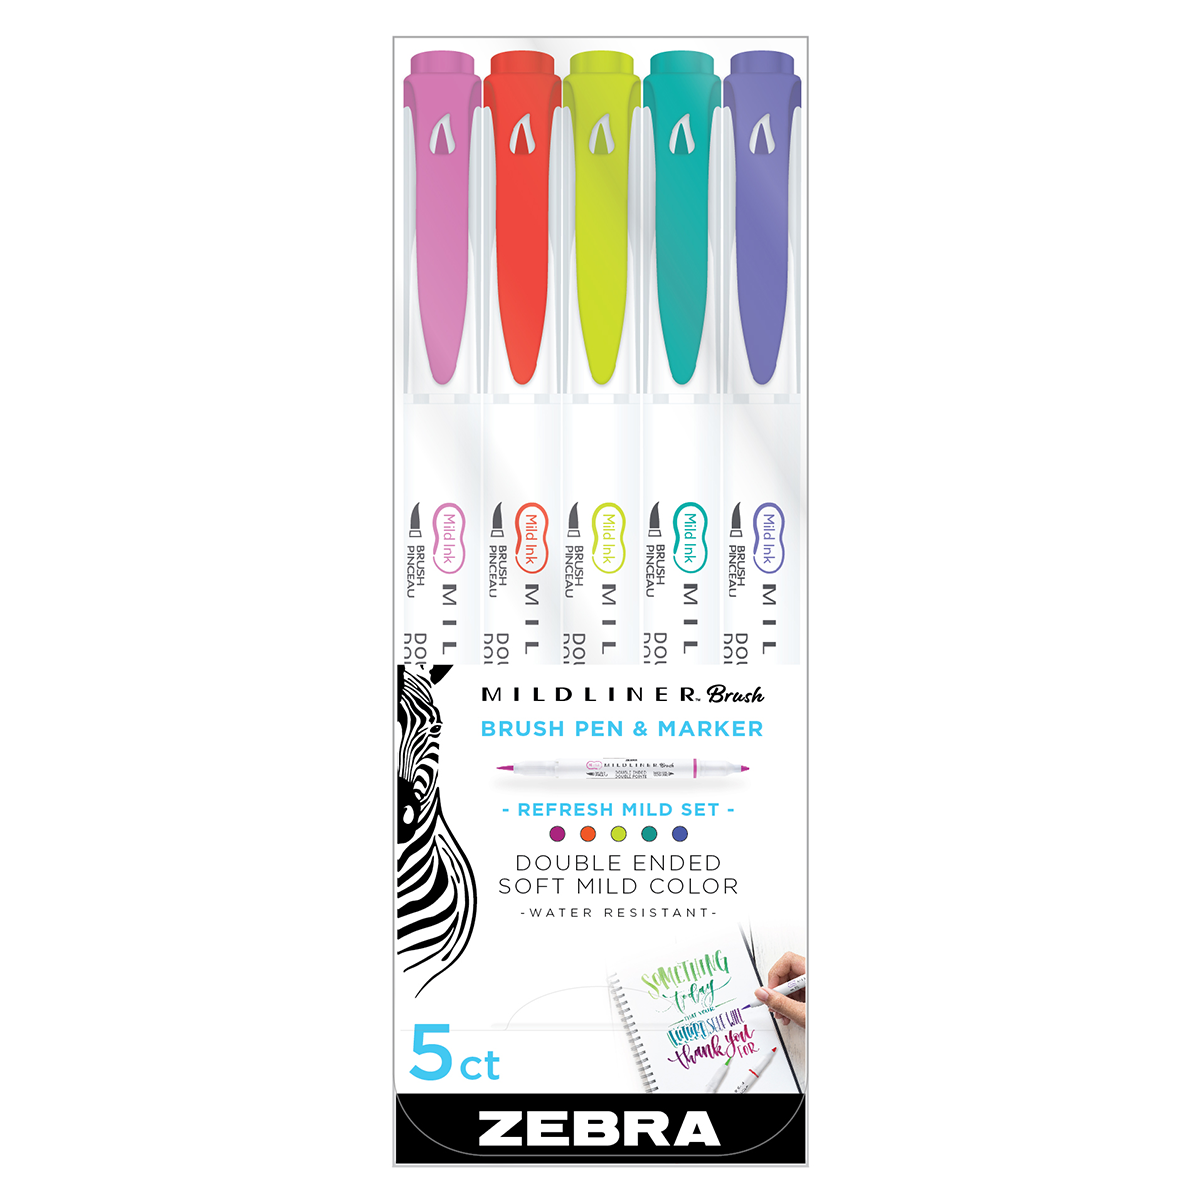 Zebra Mildliner Double Tip Highlighter (5 color set) - Warm – Ink & Lead